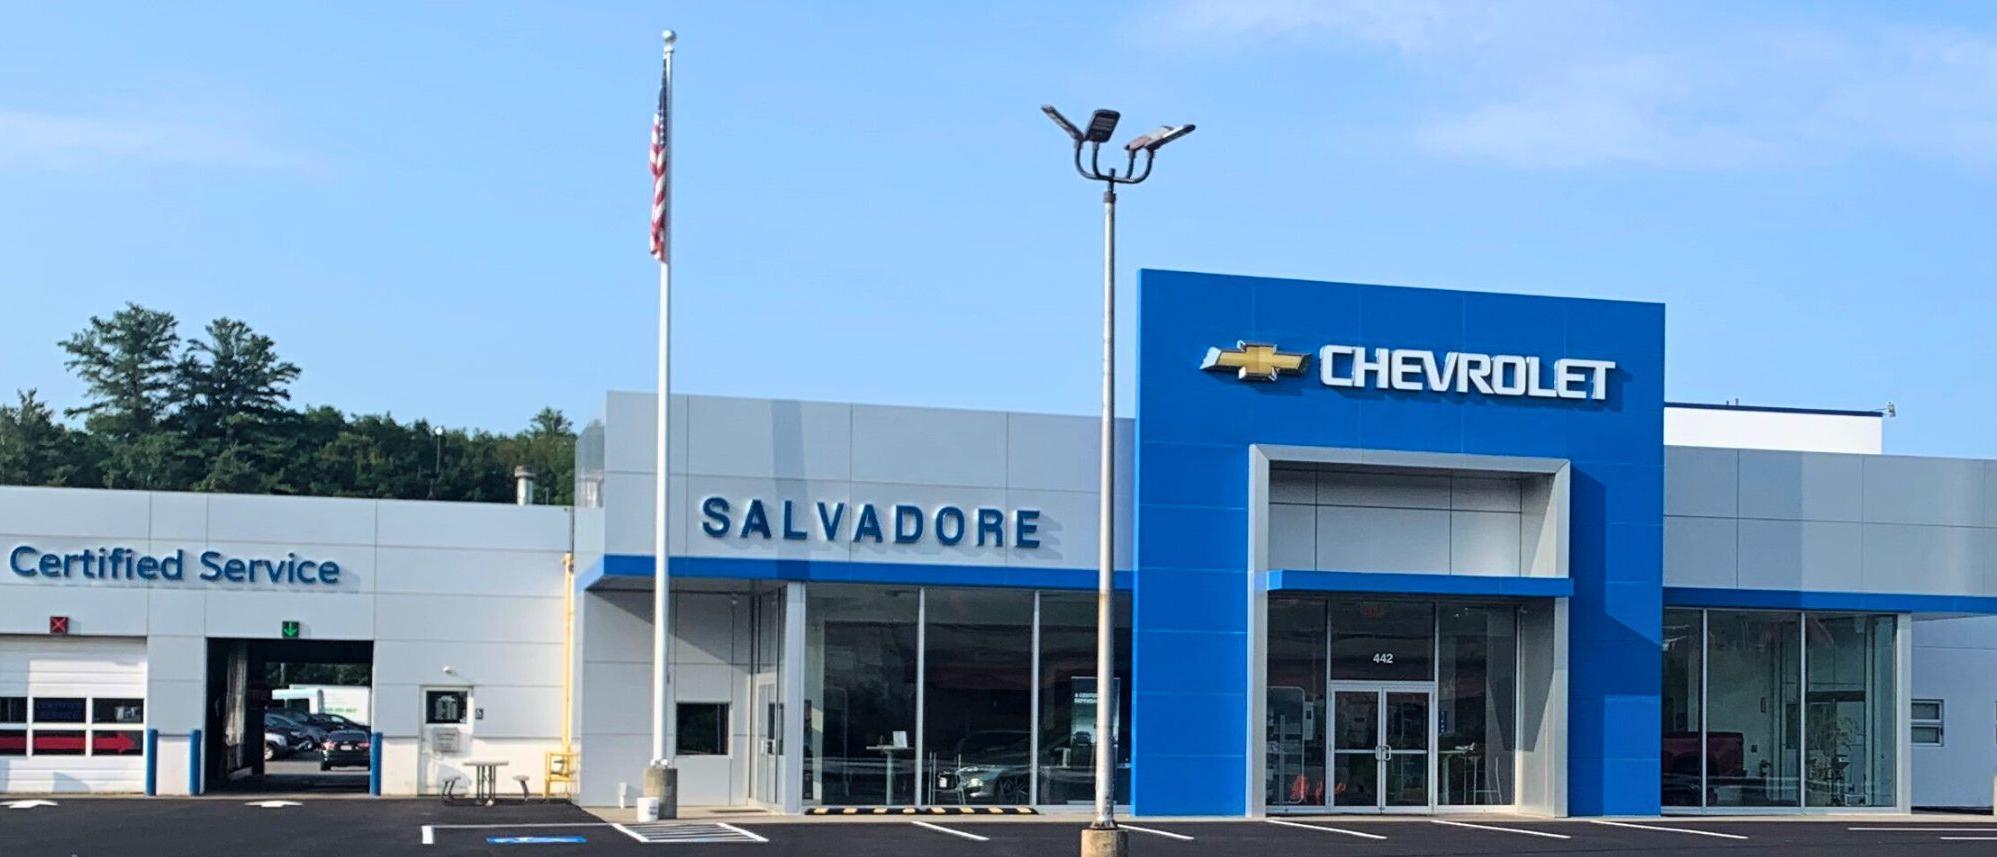 Salvadore Chevrolet